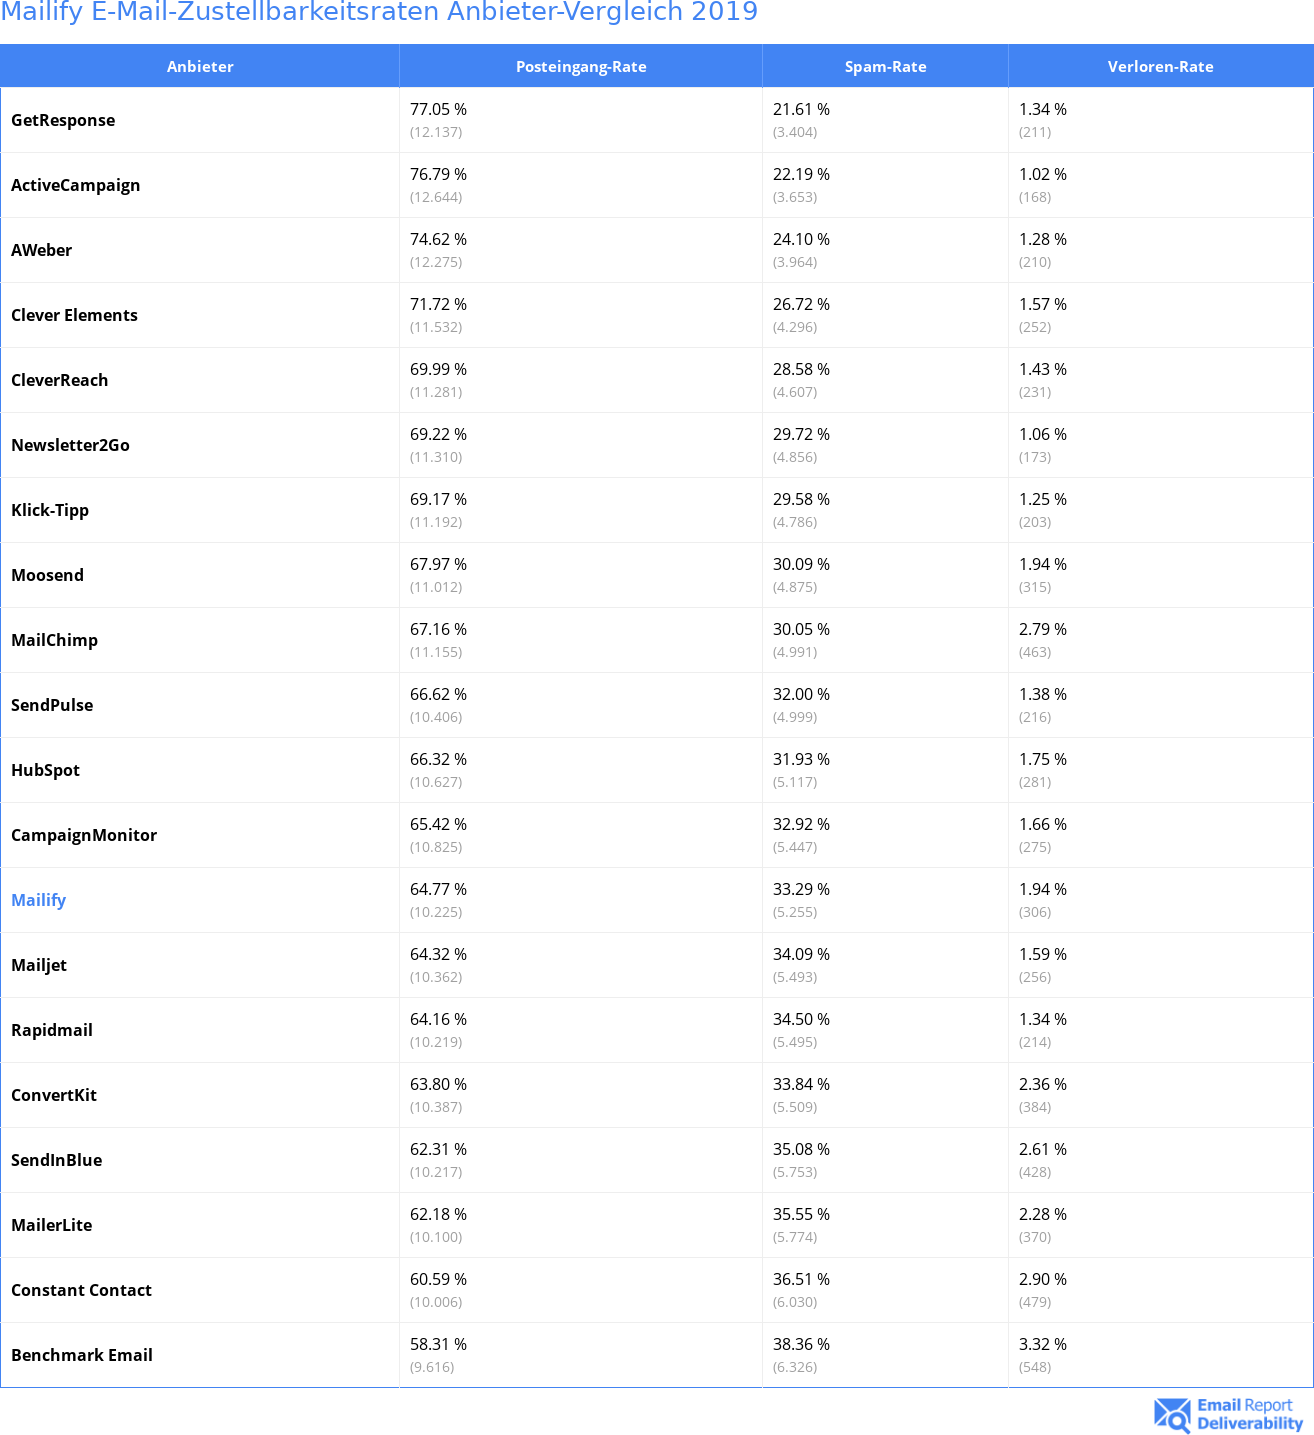 Mailify E-Mail-Zustellbarkeitsraten Anbieter-Vergleich 2019